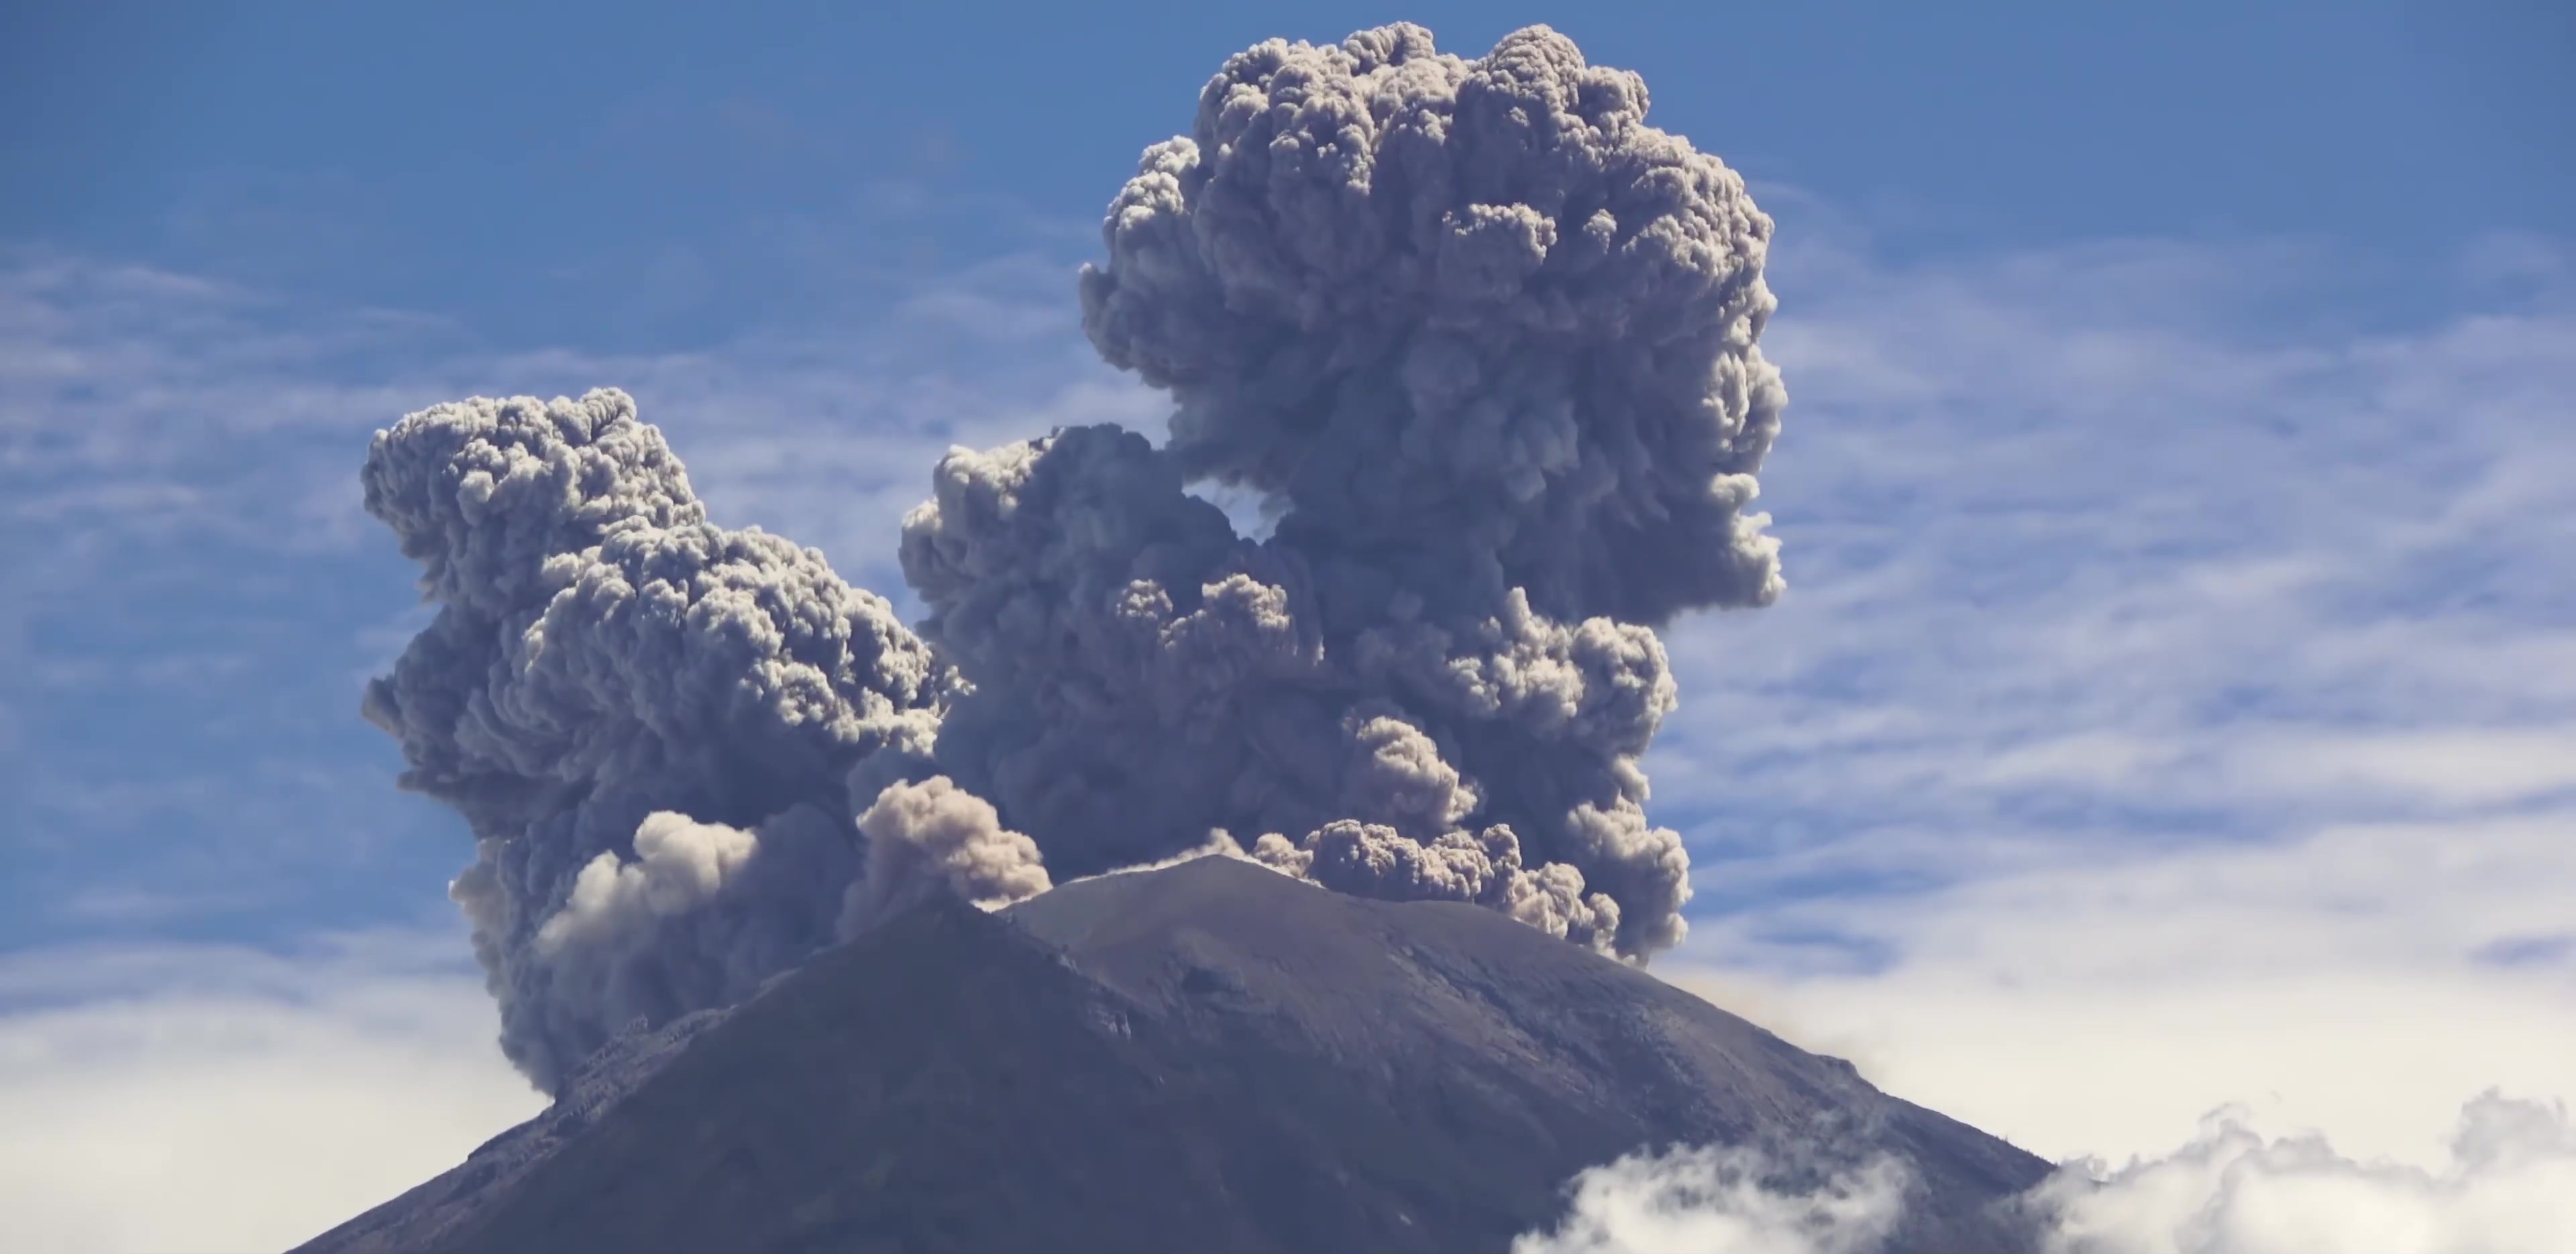 大自然壮丽风景之唯美好看的火山爆发图片壁纸【10】 - 摄影 - 亿图全景图库